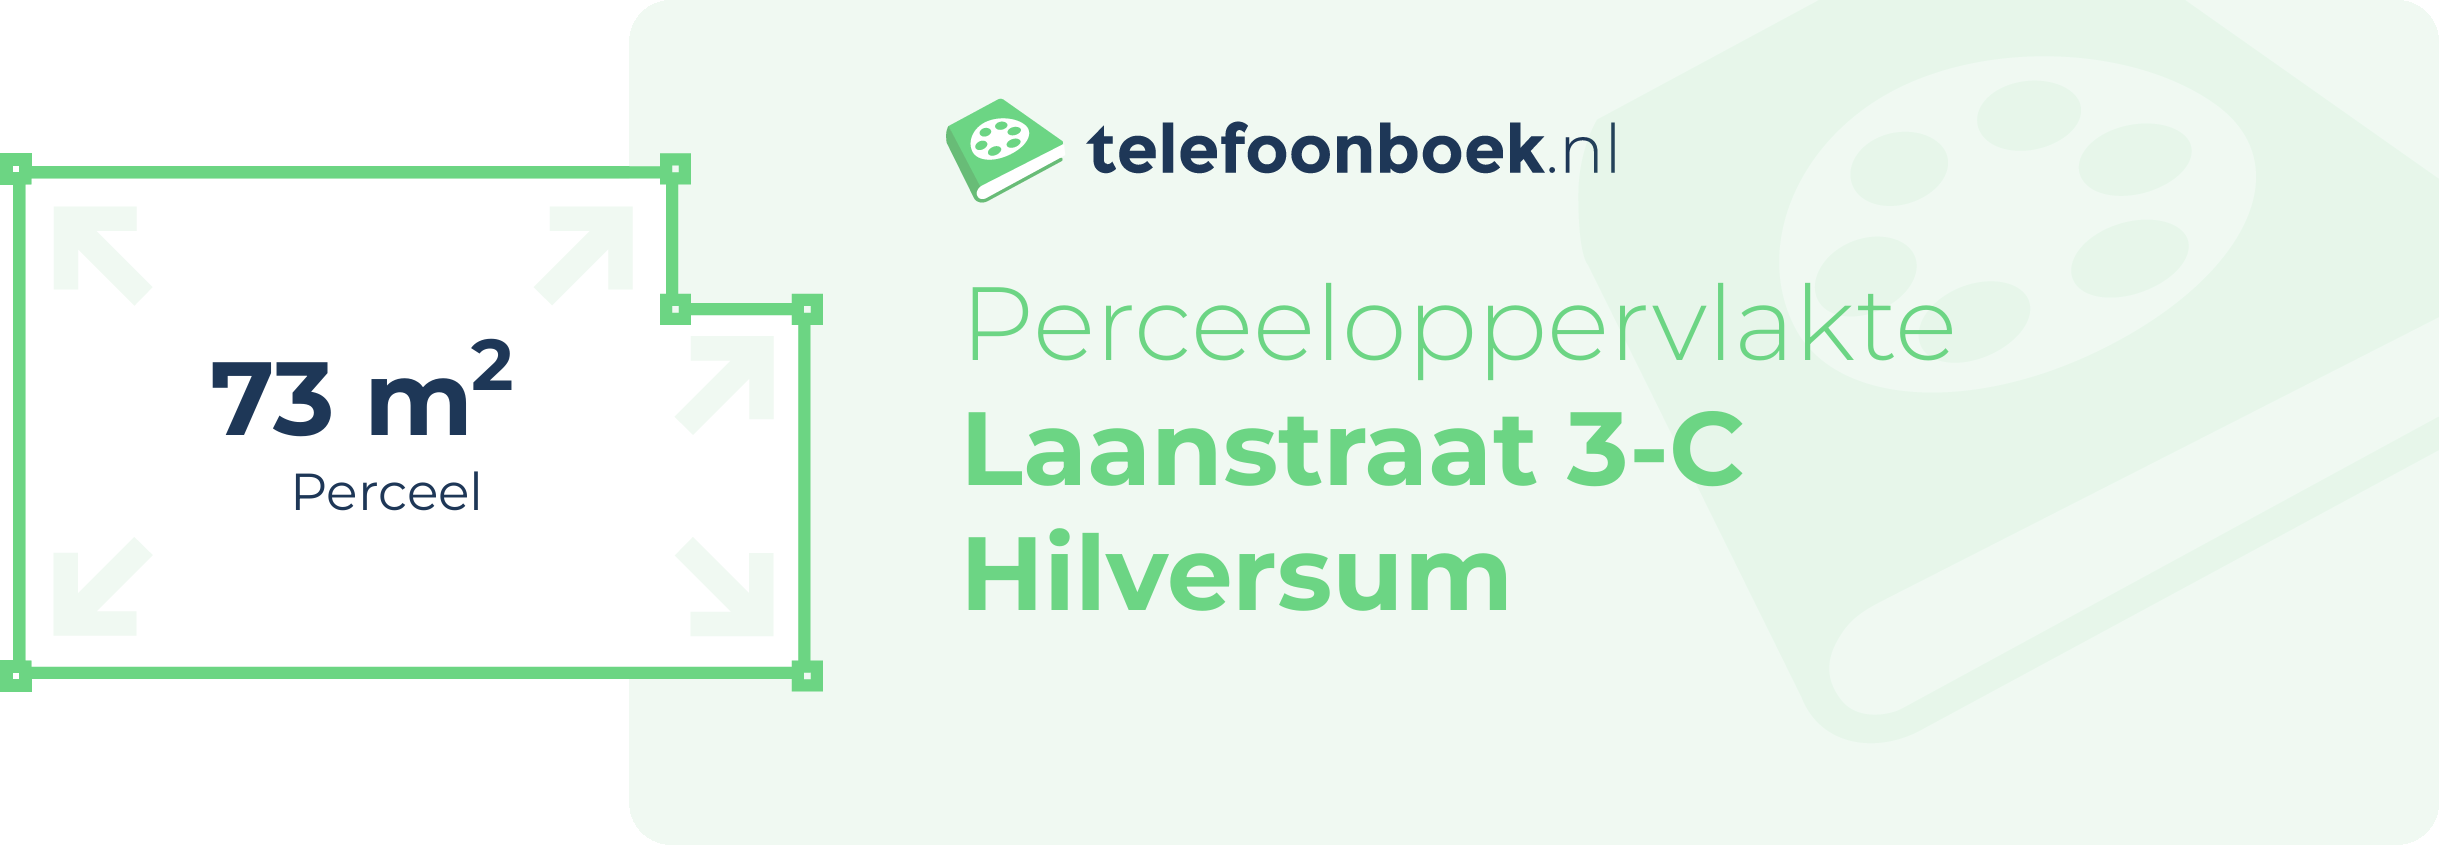 Perceeloppervlakte Laanstraat 3-C Hilversum